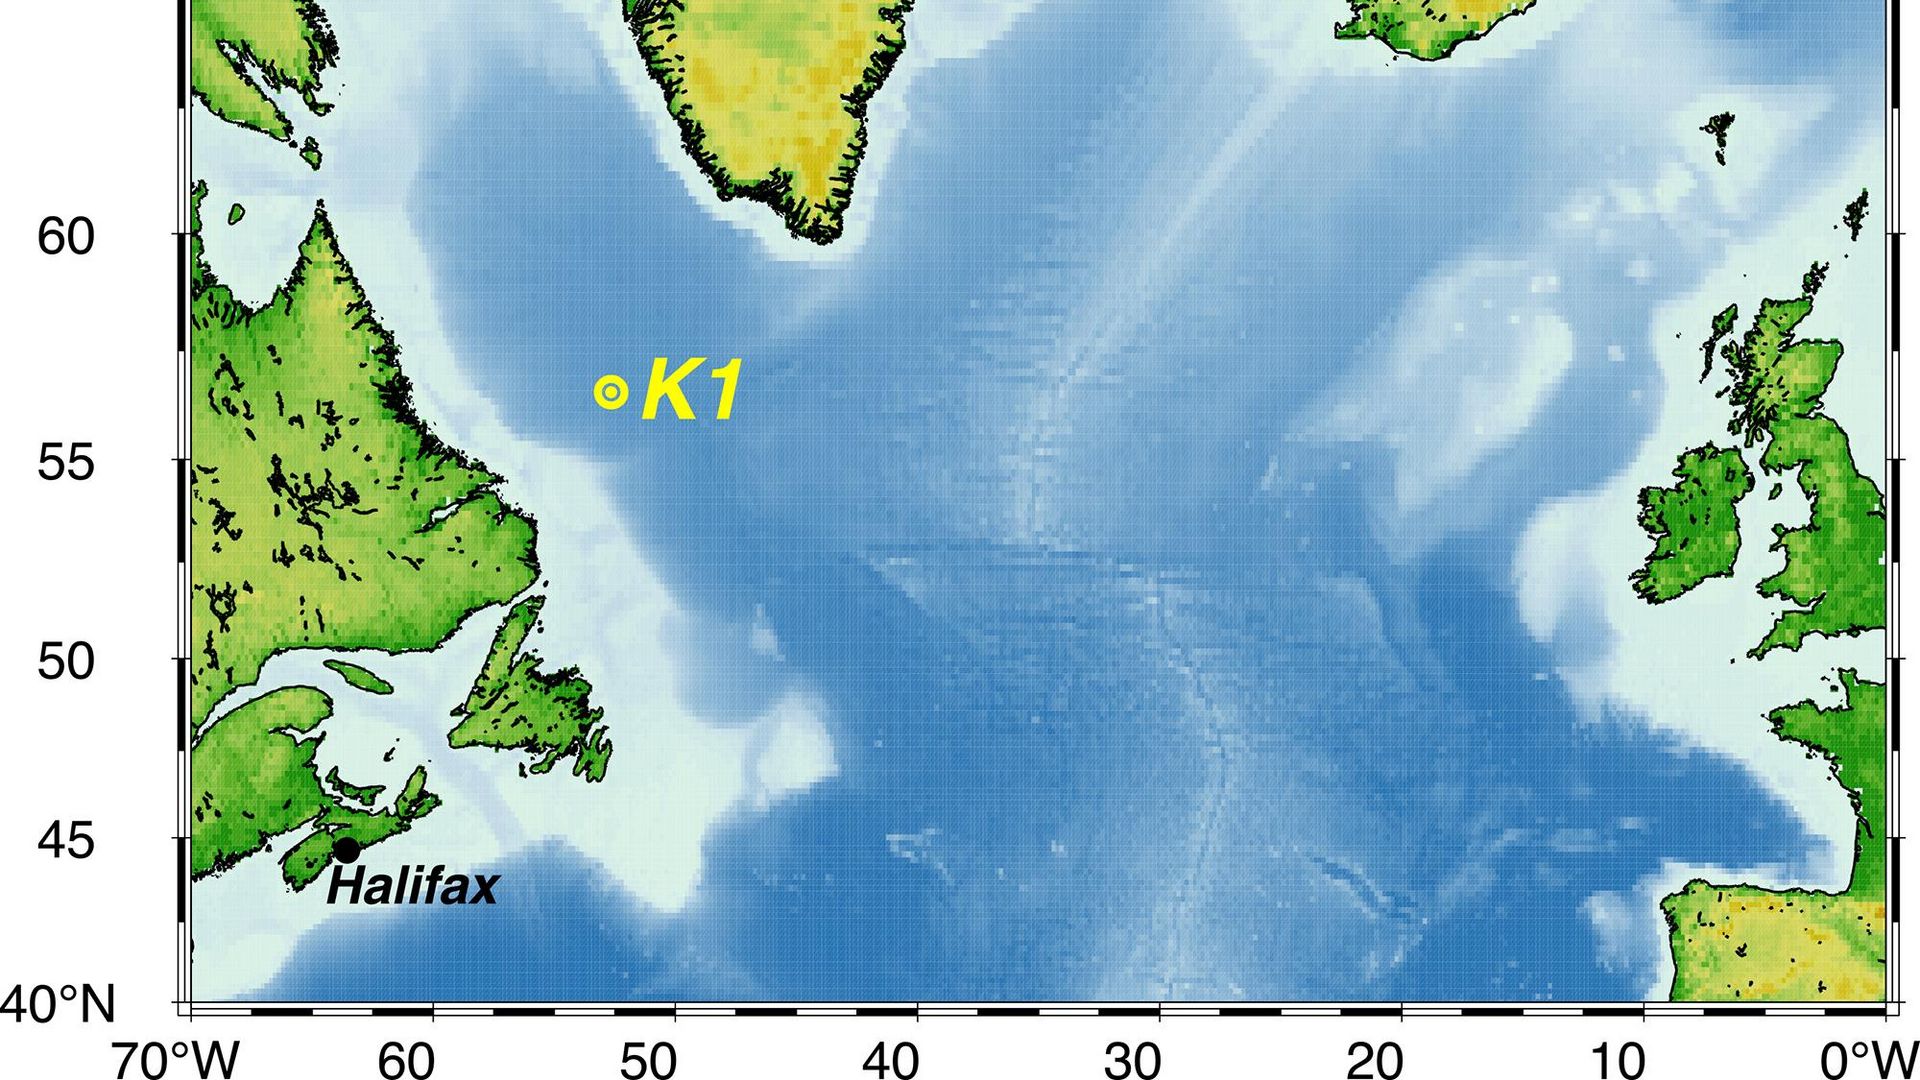 Kartengrafik der Labradorsee mit der Langzeitmessstation K1